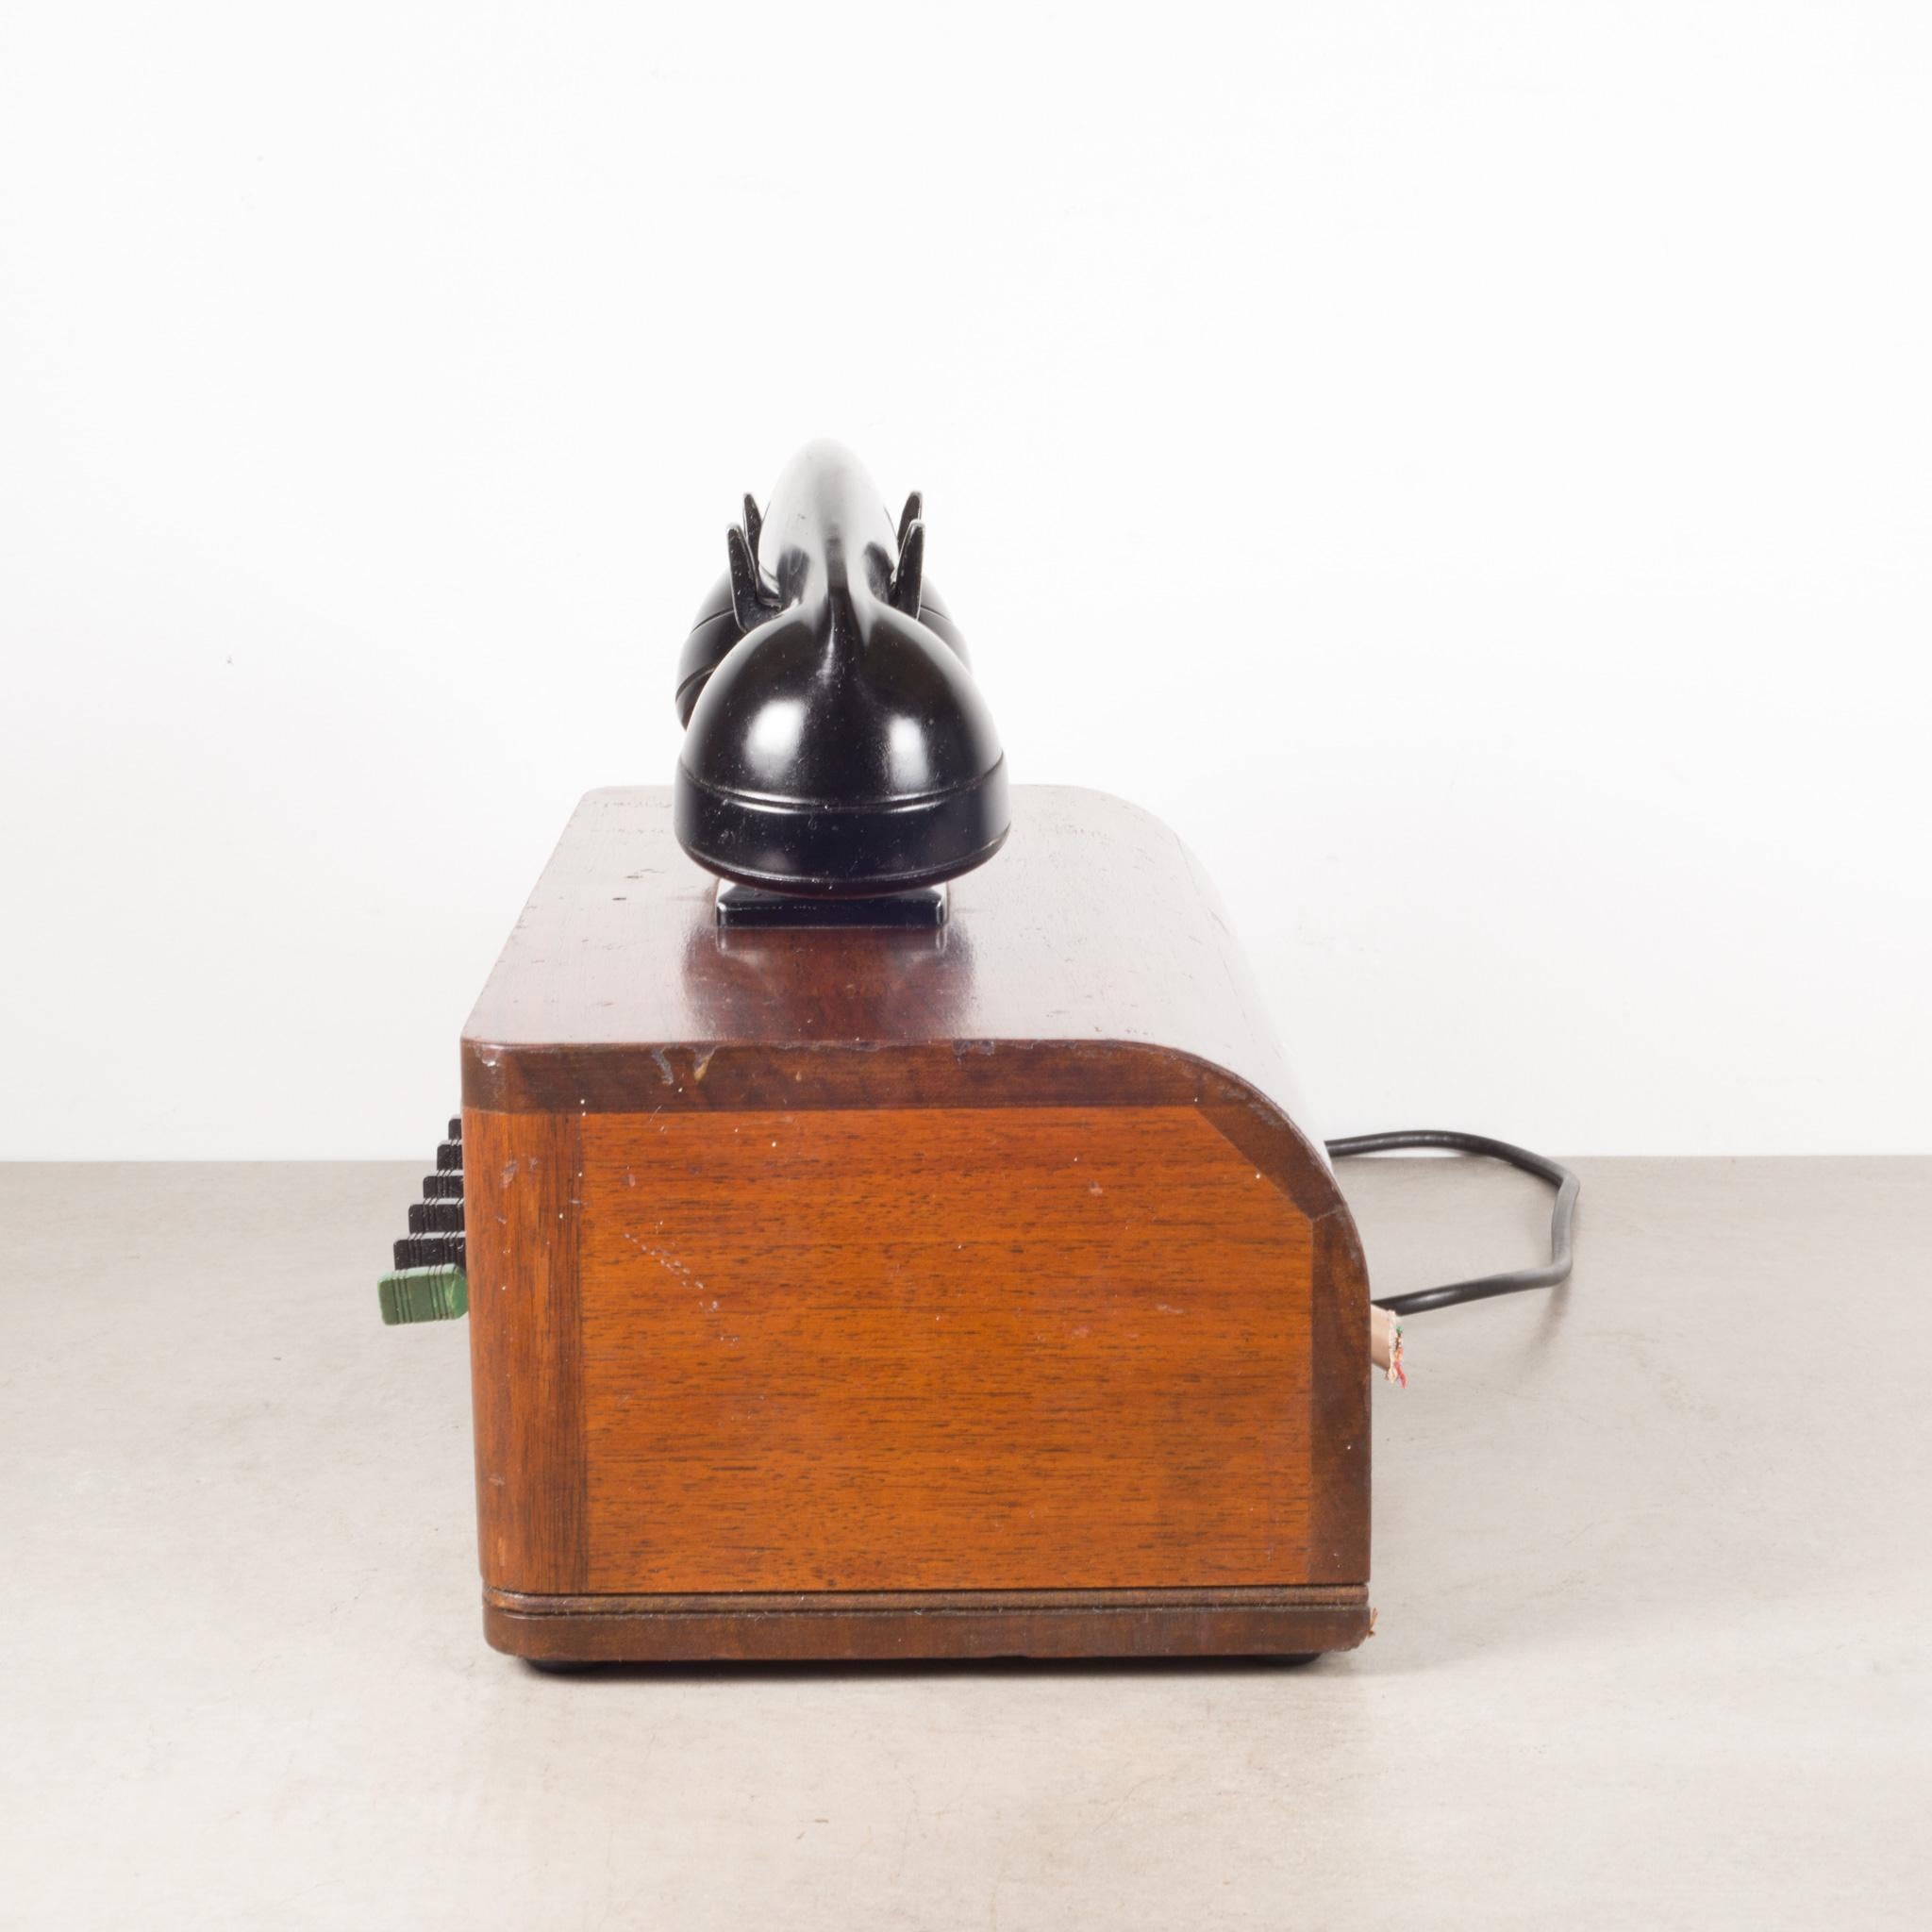 Industrial Antique World War ll Era US Navy Bakelite Switch Board Phone, c.1940